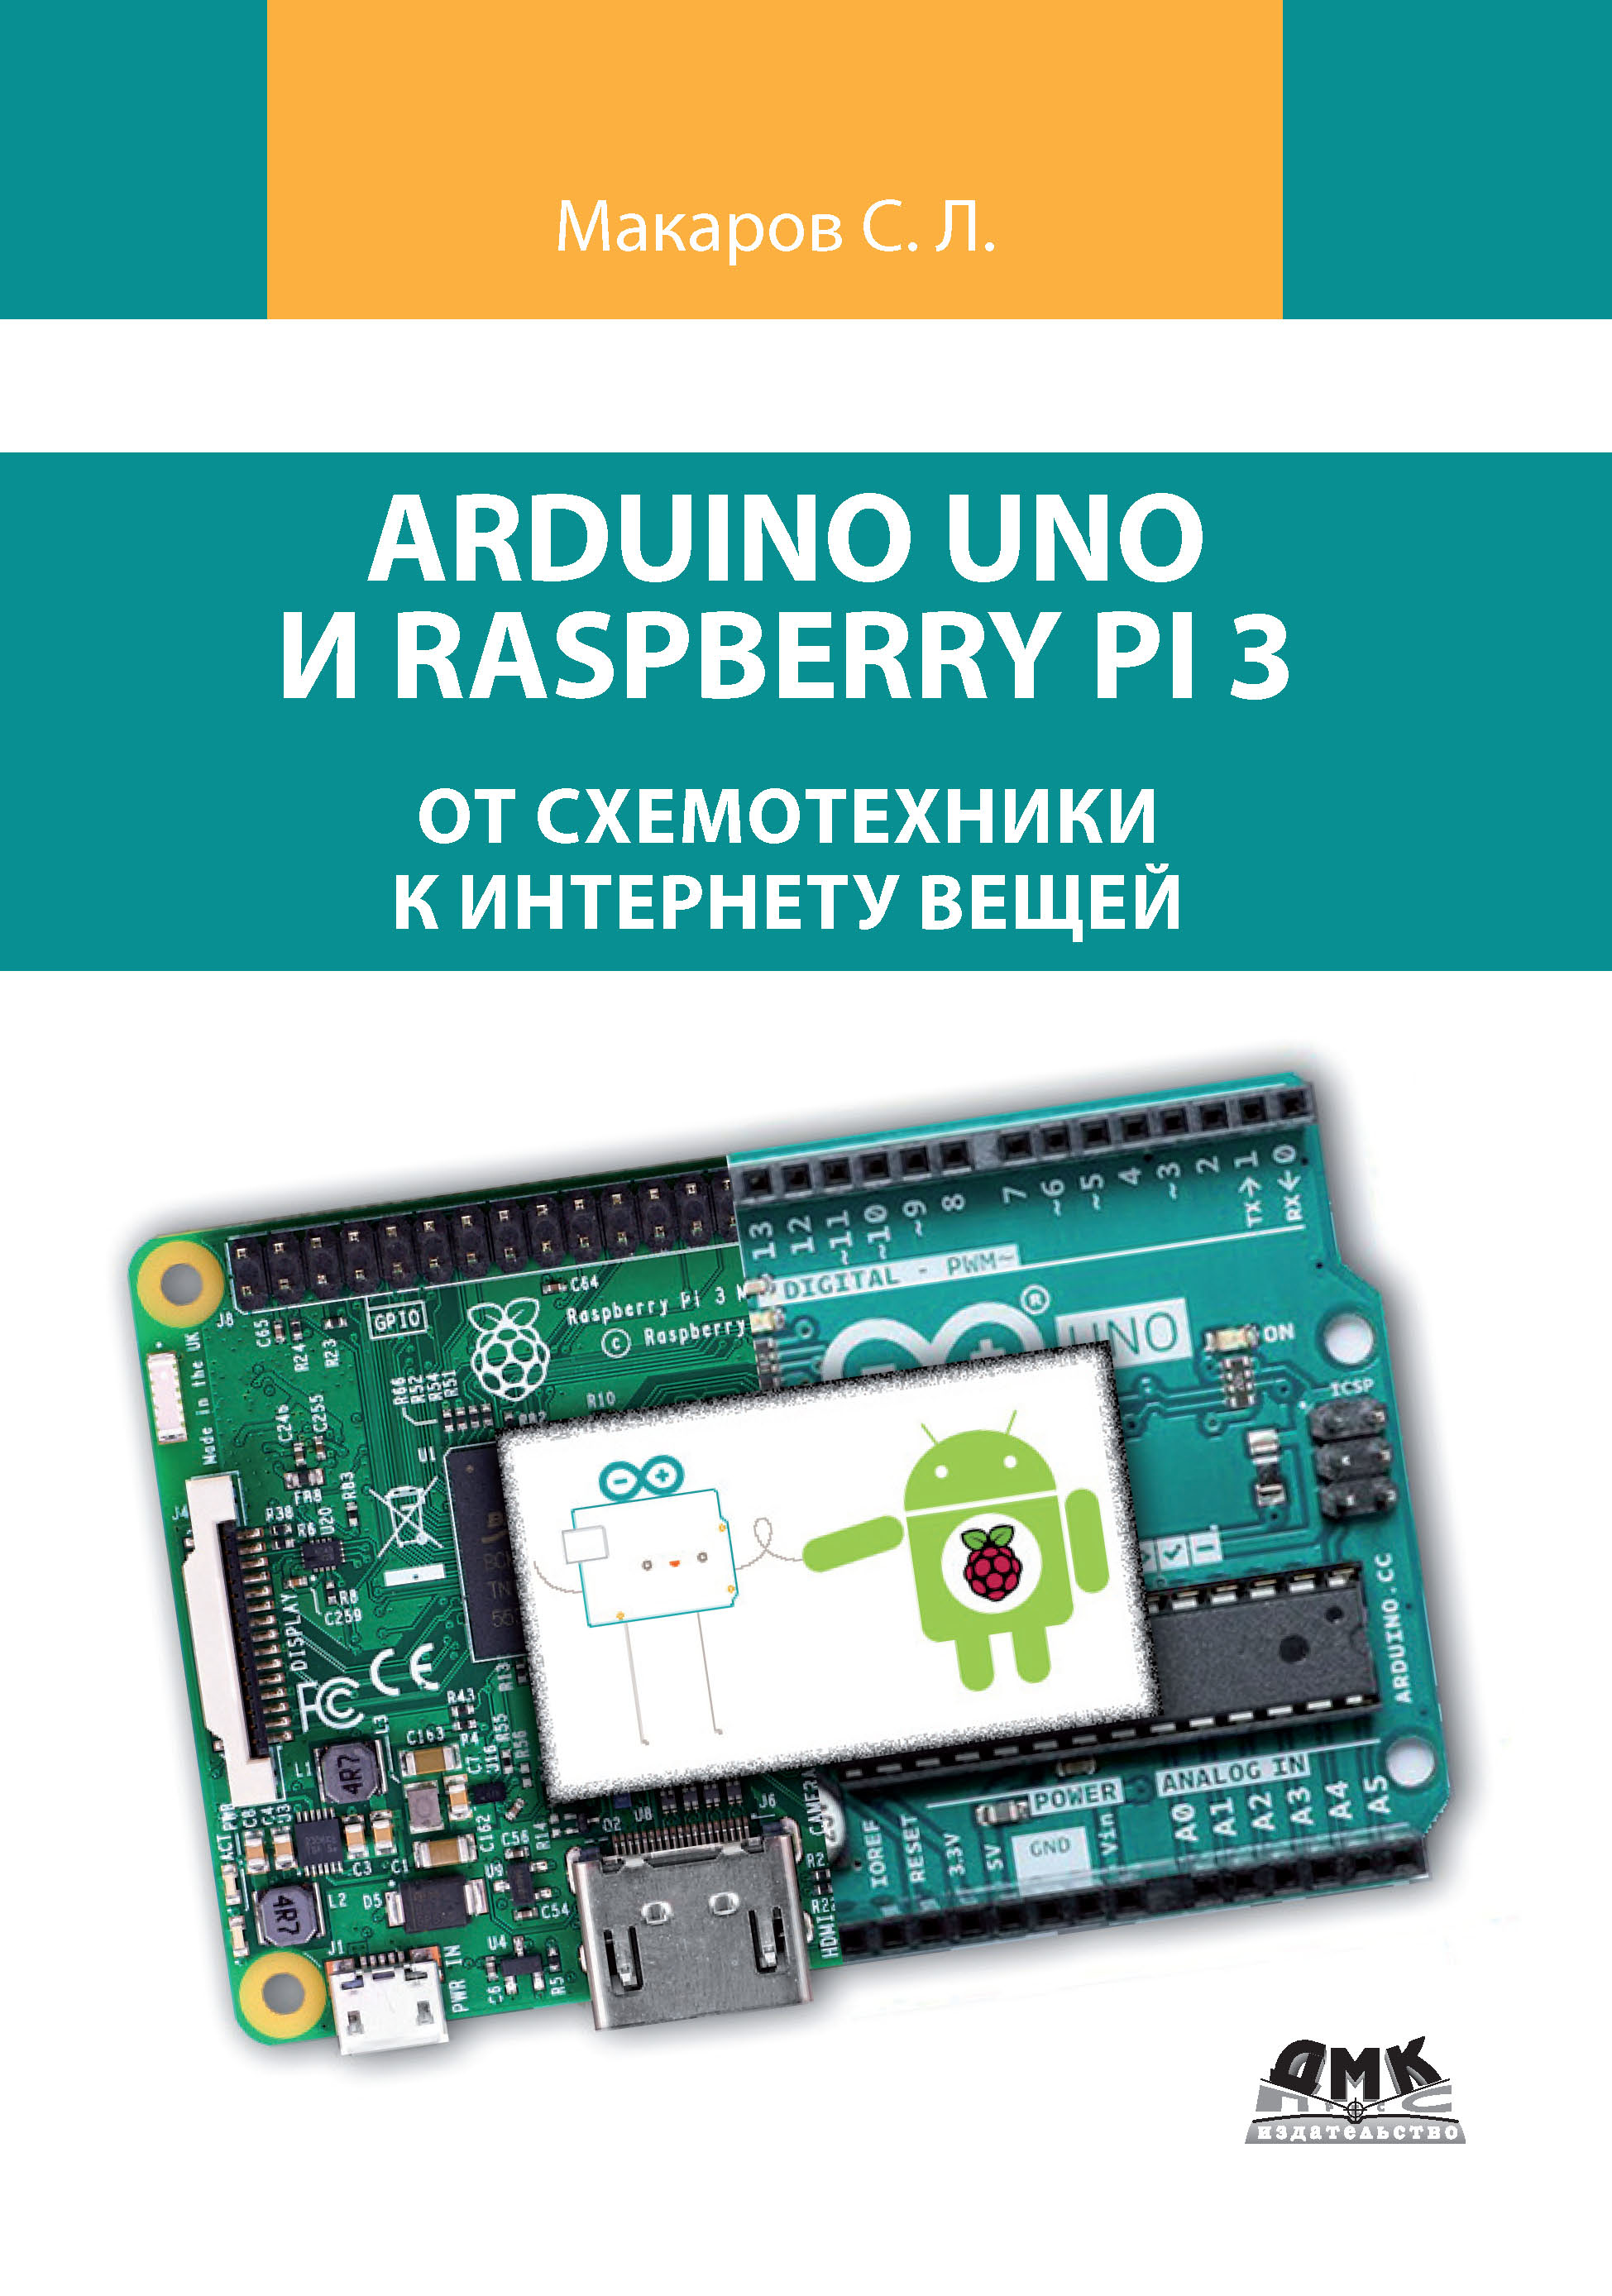 Книга  Arduino Uno и Raspberry Pi 3: от схемотехники к интернету вещей созданная С. Л. Макаров может относится к жанру компьютерное железо, программирование, руководства, электроника. Стоимость электронной книги Arduino Uno и Raspberry Pi 3: от схемотехники к интернету вещей с идентификатором 48411159 составляет 490.00 руб.